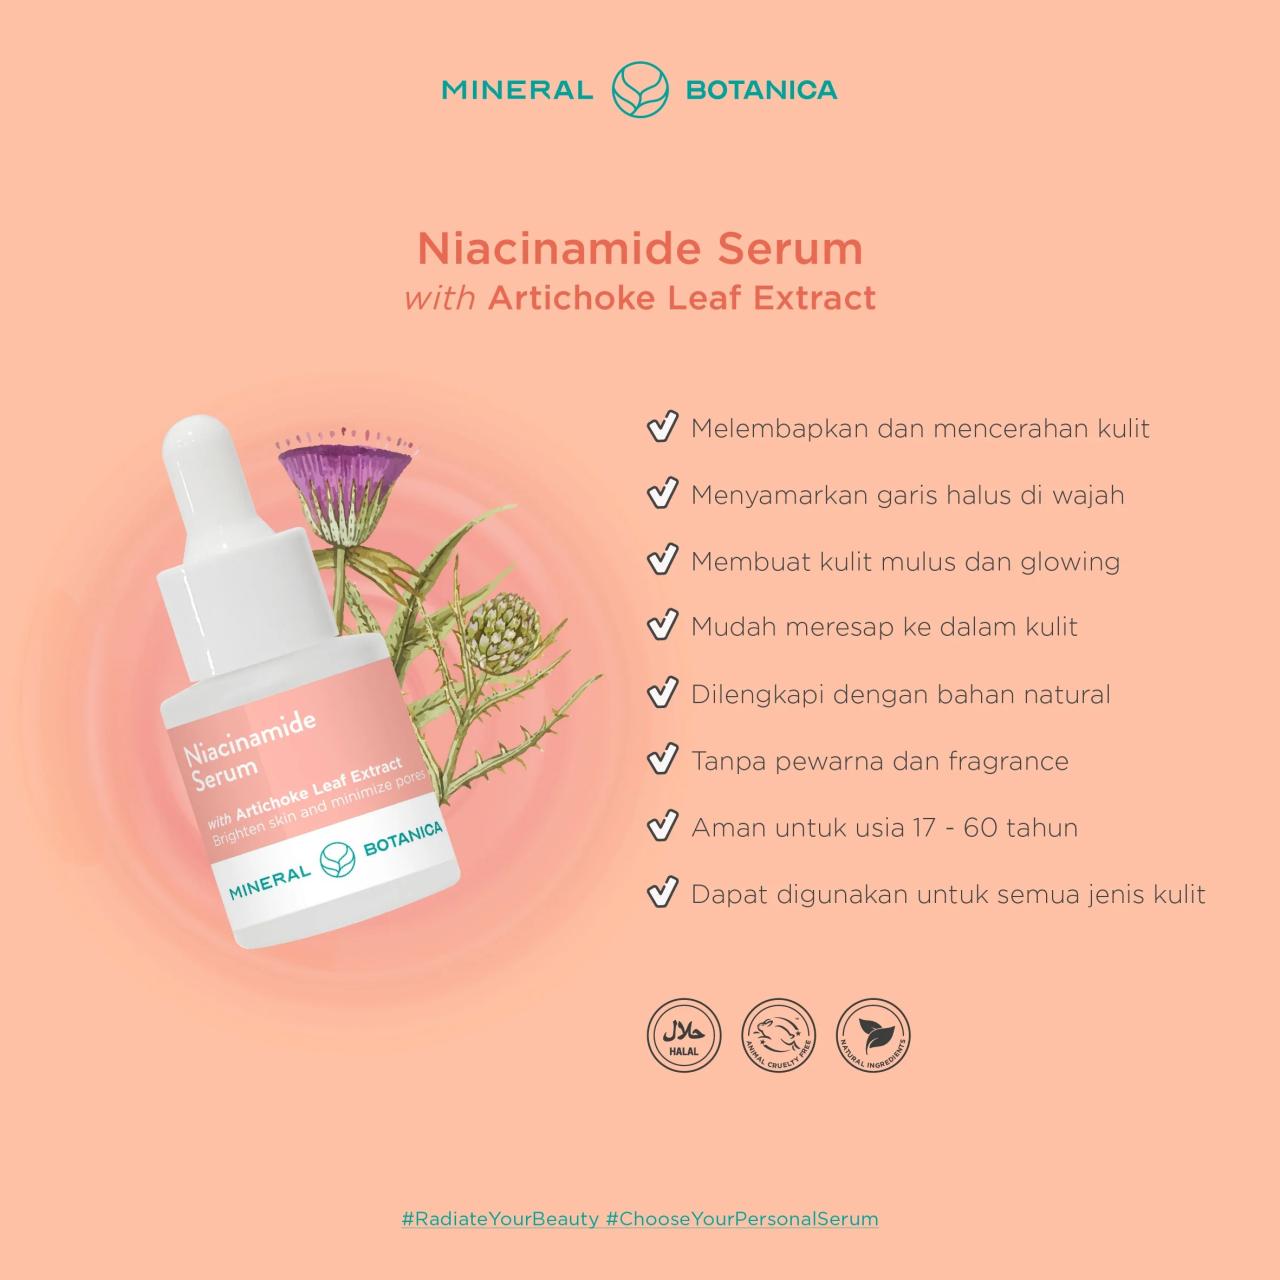 Cek Ingredients Mineral Botanica Niacinamide Serum terbaru